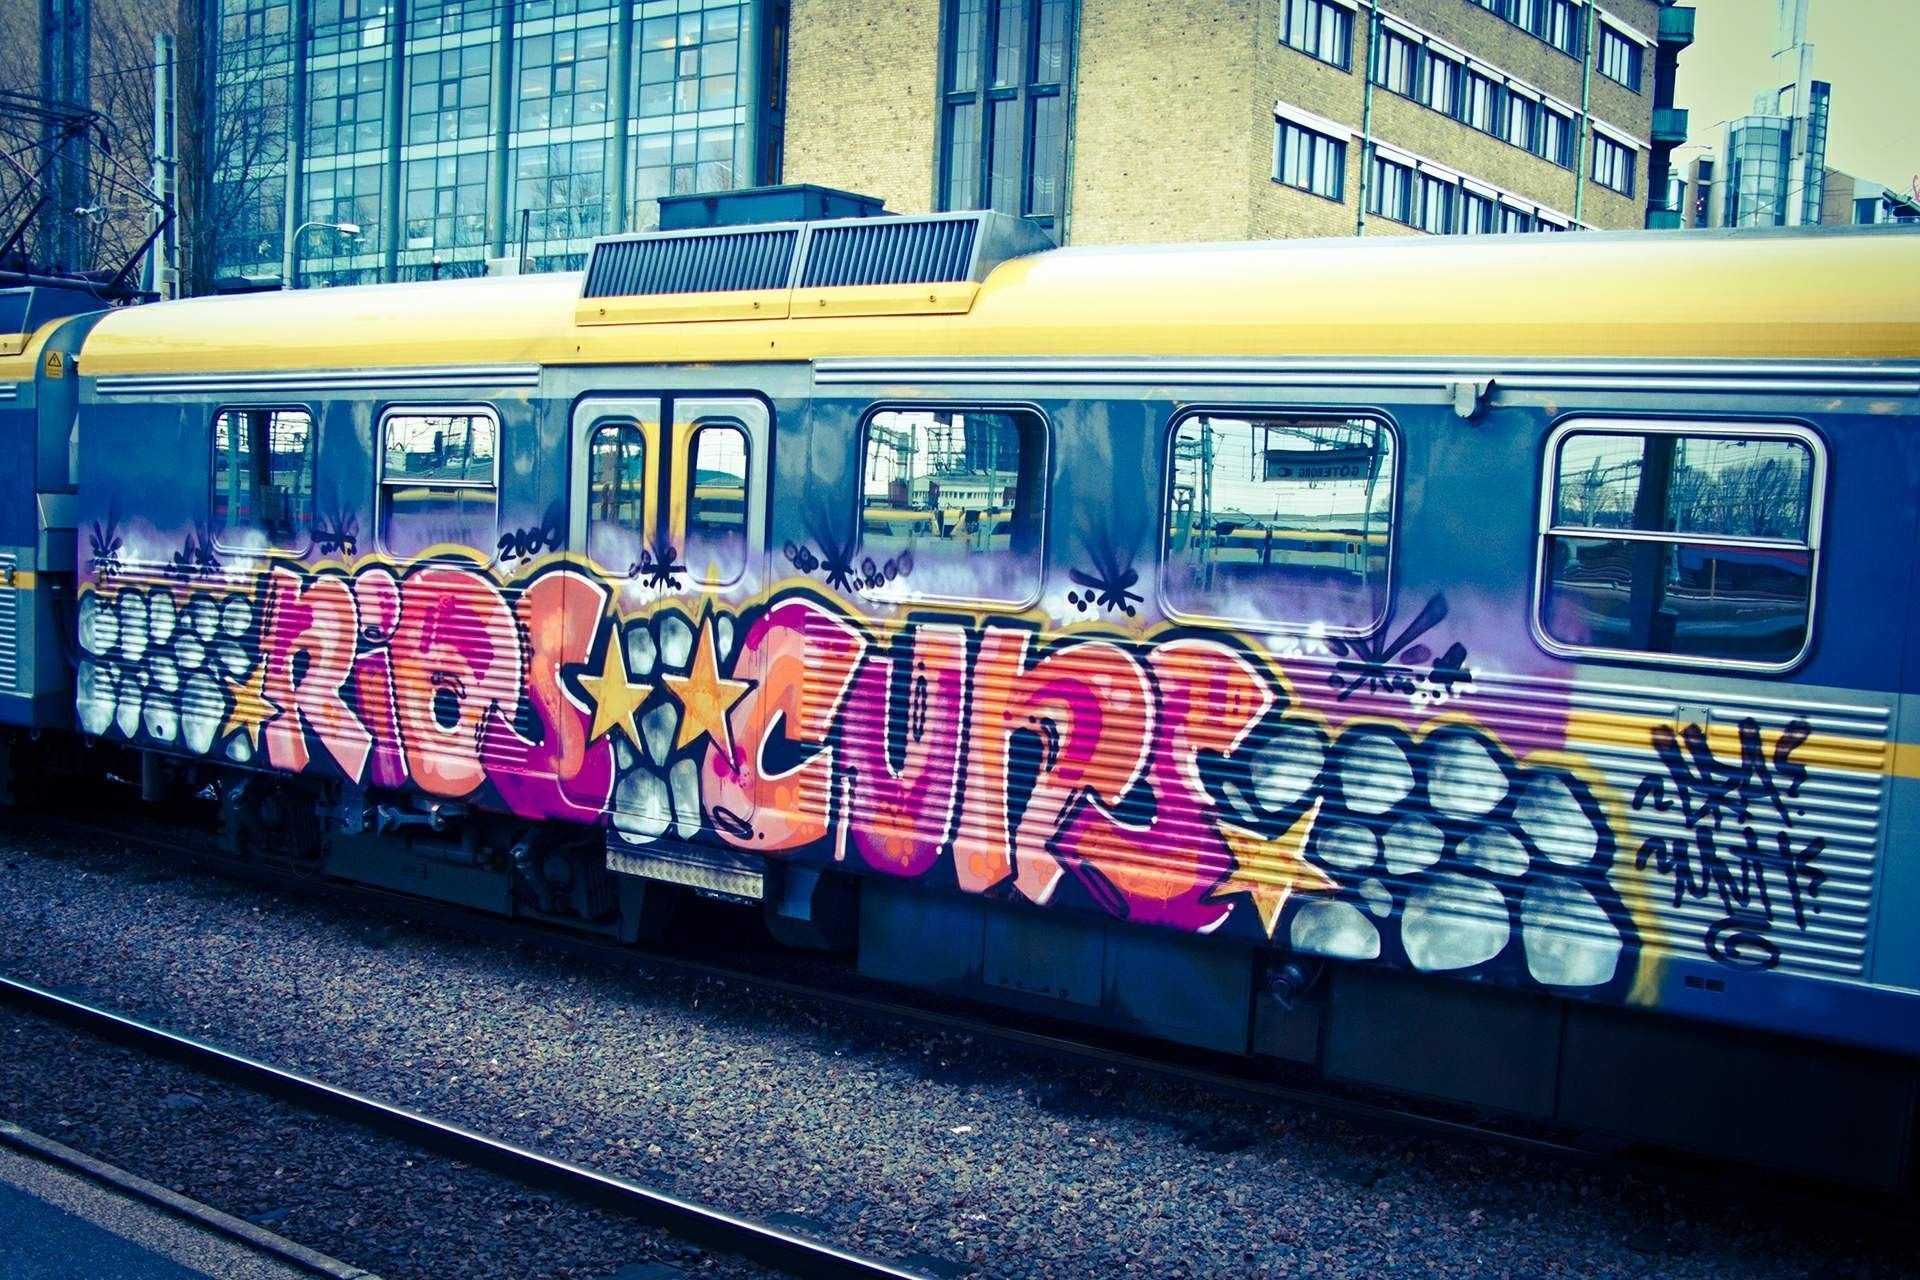 Graffiti Hd Wallpaper The Train Street Art Cool Images - Graffiti Wallpaper Hd , HD Wallpaper & Backgrounds